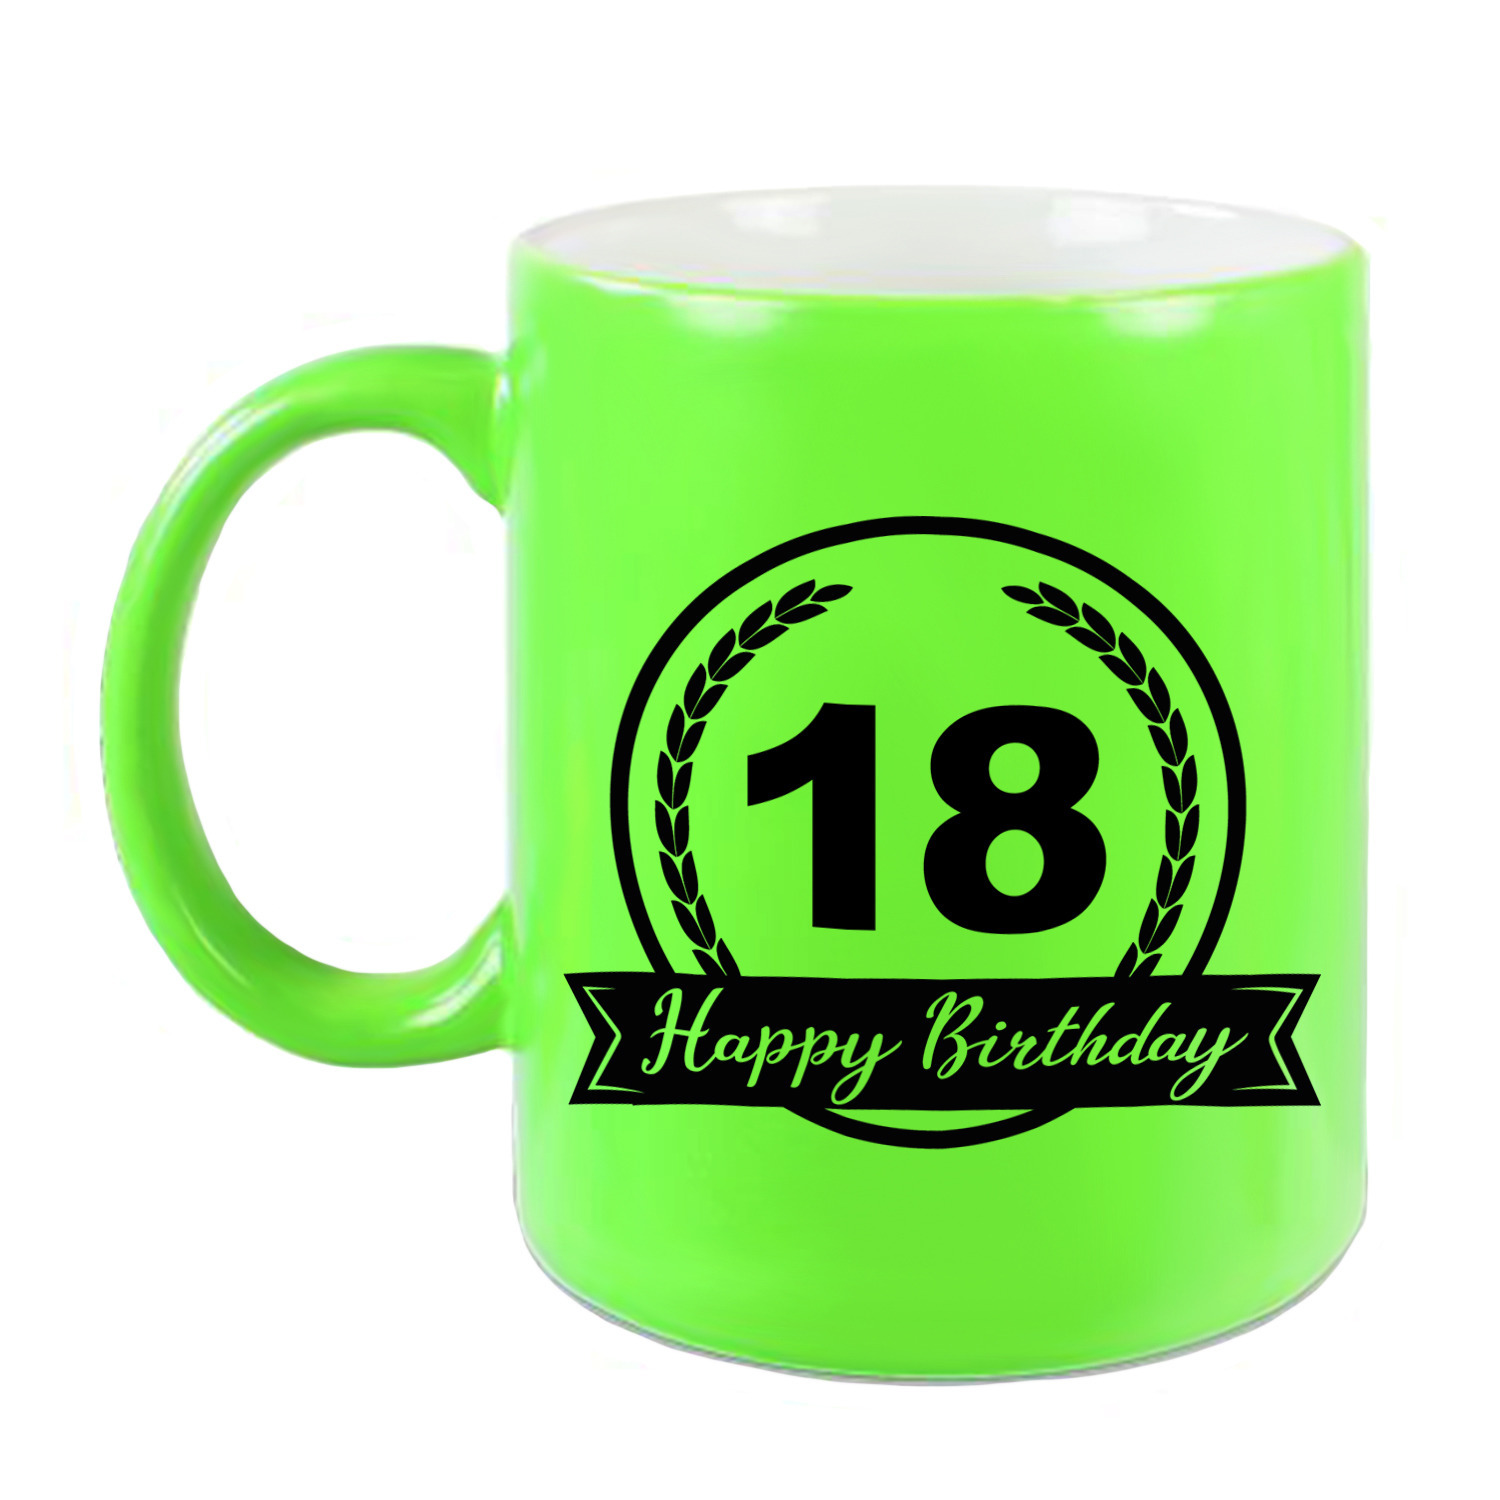 Happy Birthday 18 years cadeau mok-beker neon groen met wimpel 330 ml